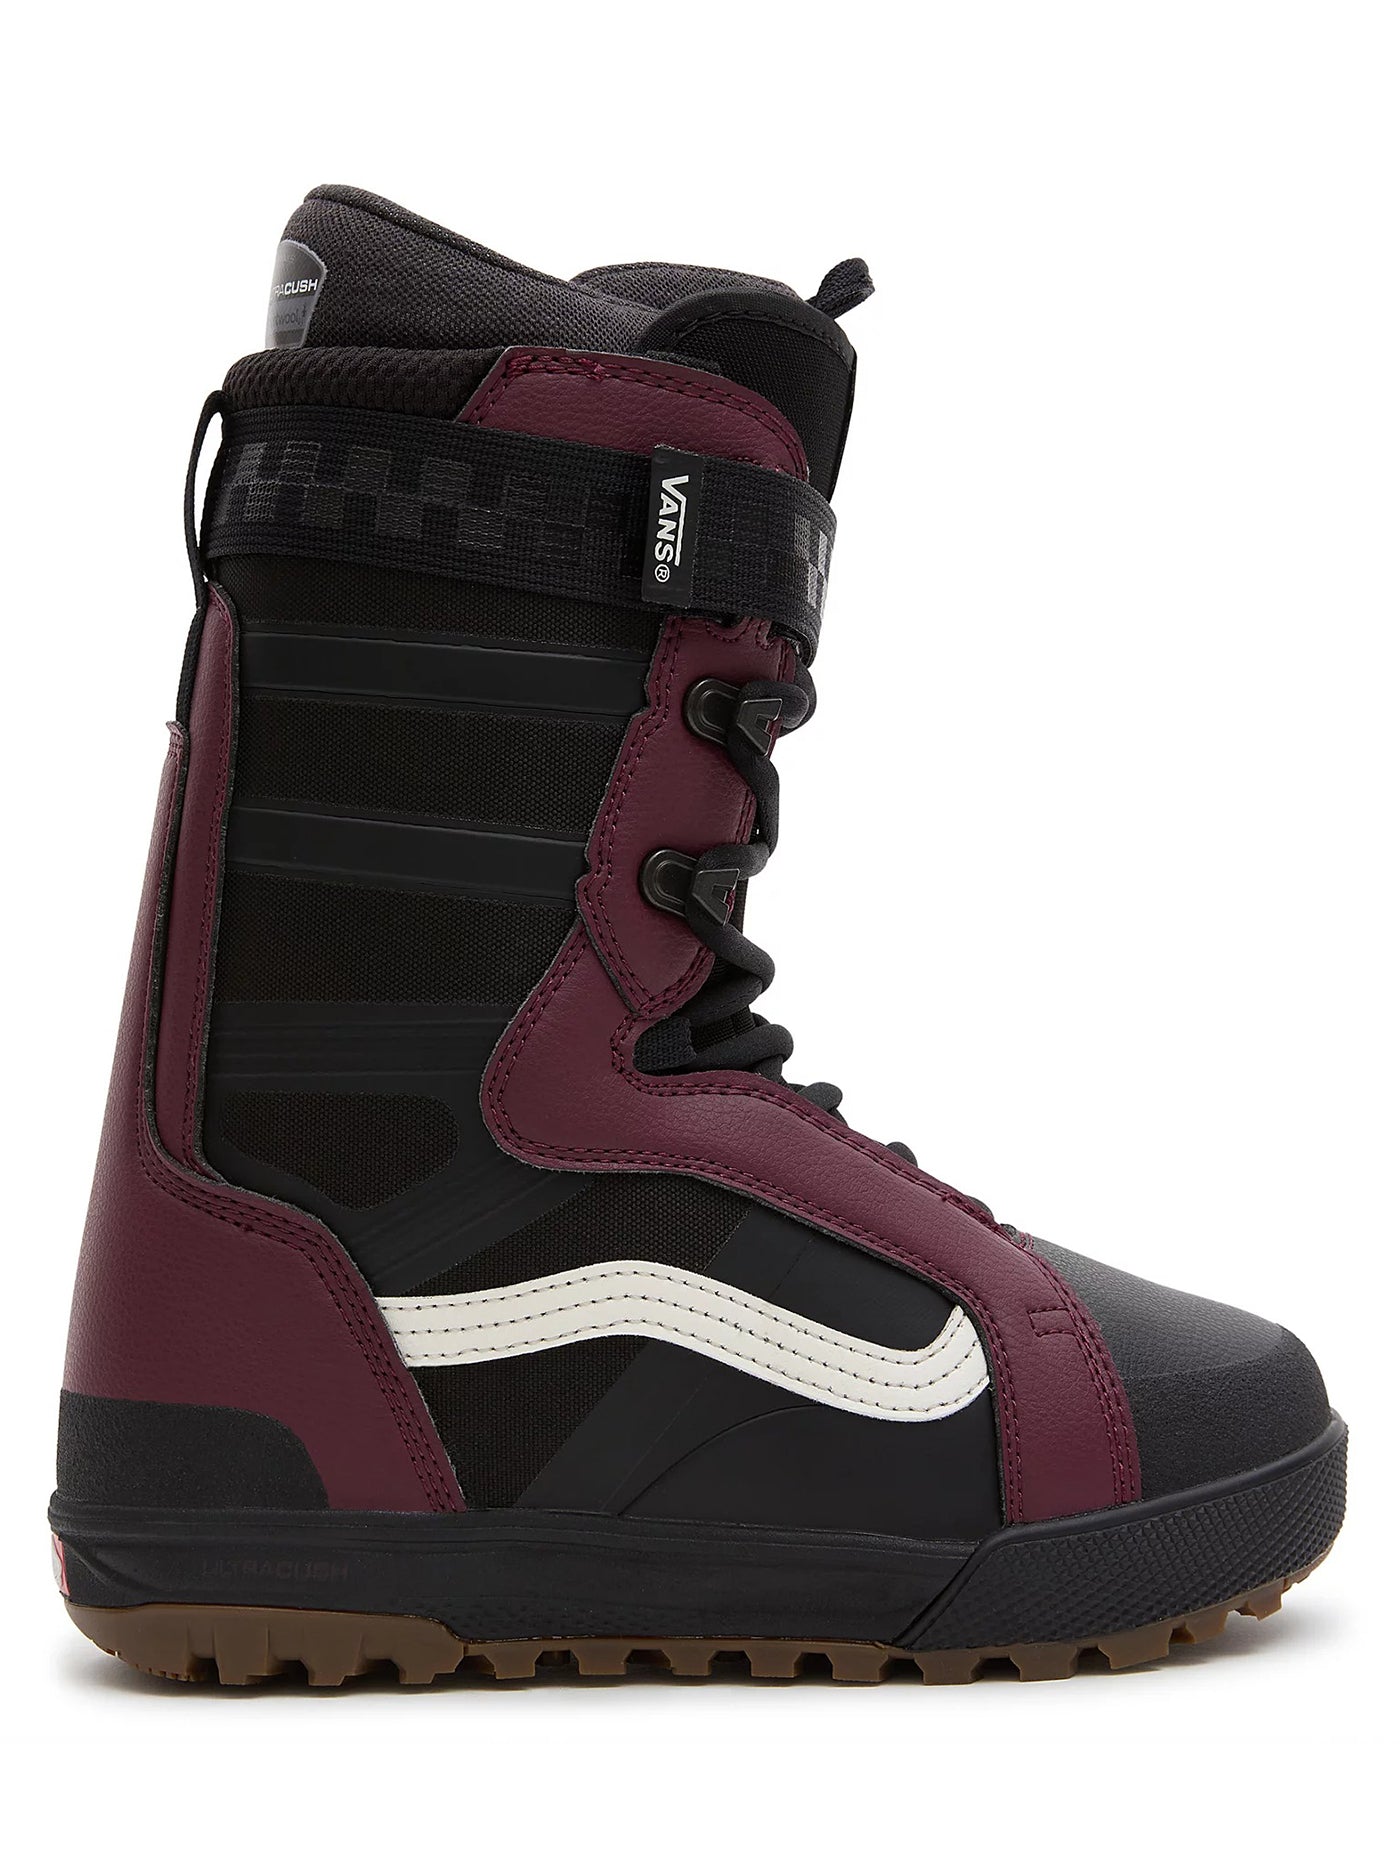 Vans Hi-Standard Pro Jill Perkins Snowboard Boots 2024